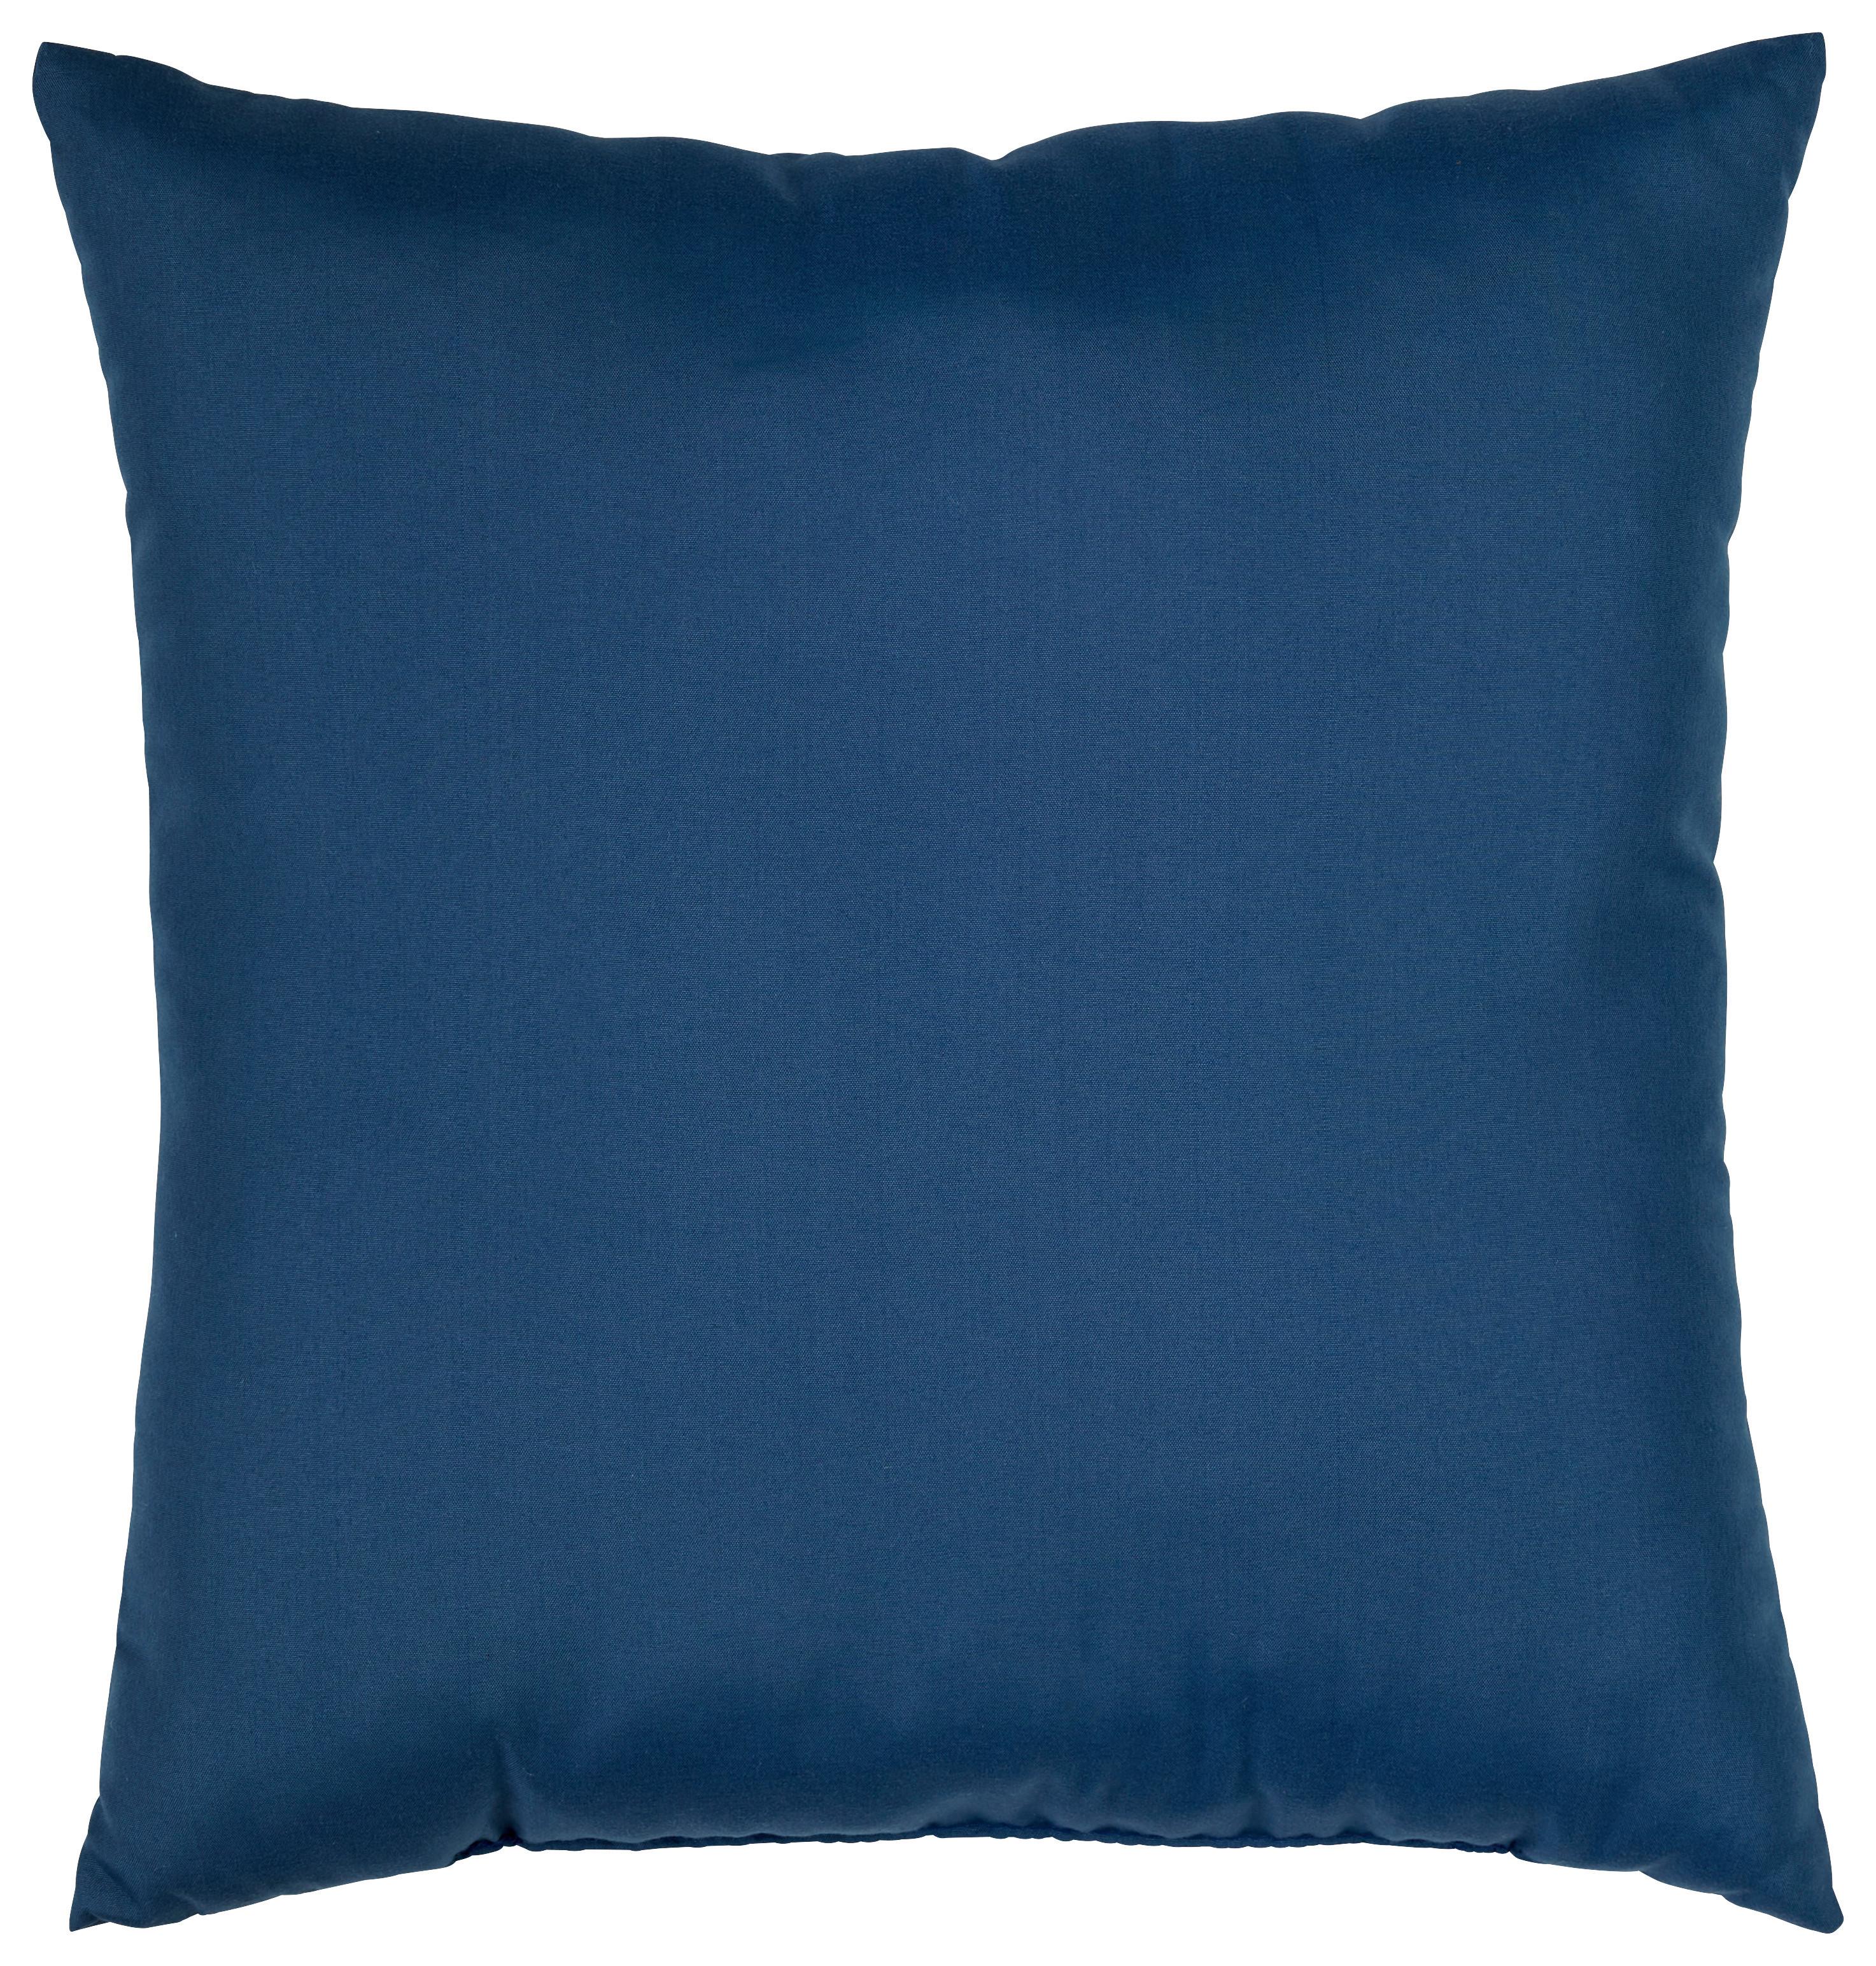 Zierkissen Maxi in diversen Farben - Türkis/Blau, Textil (38/38cm) - Modern Living